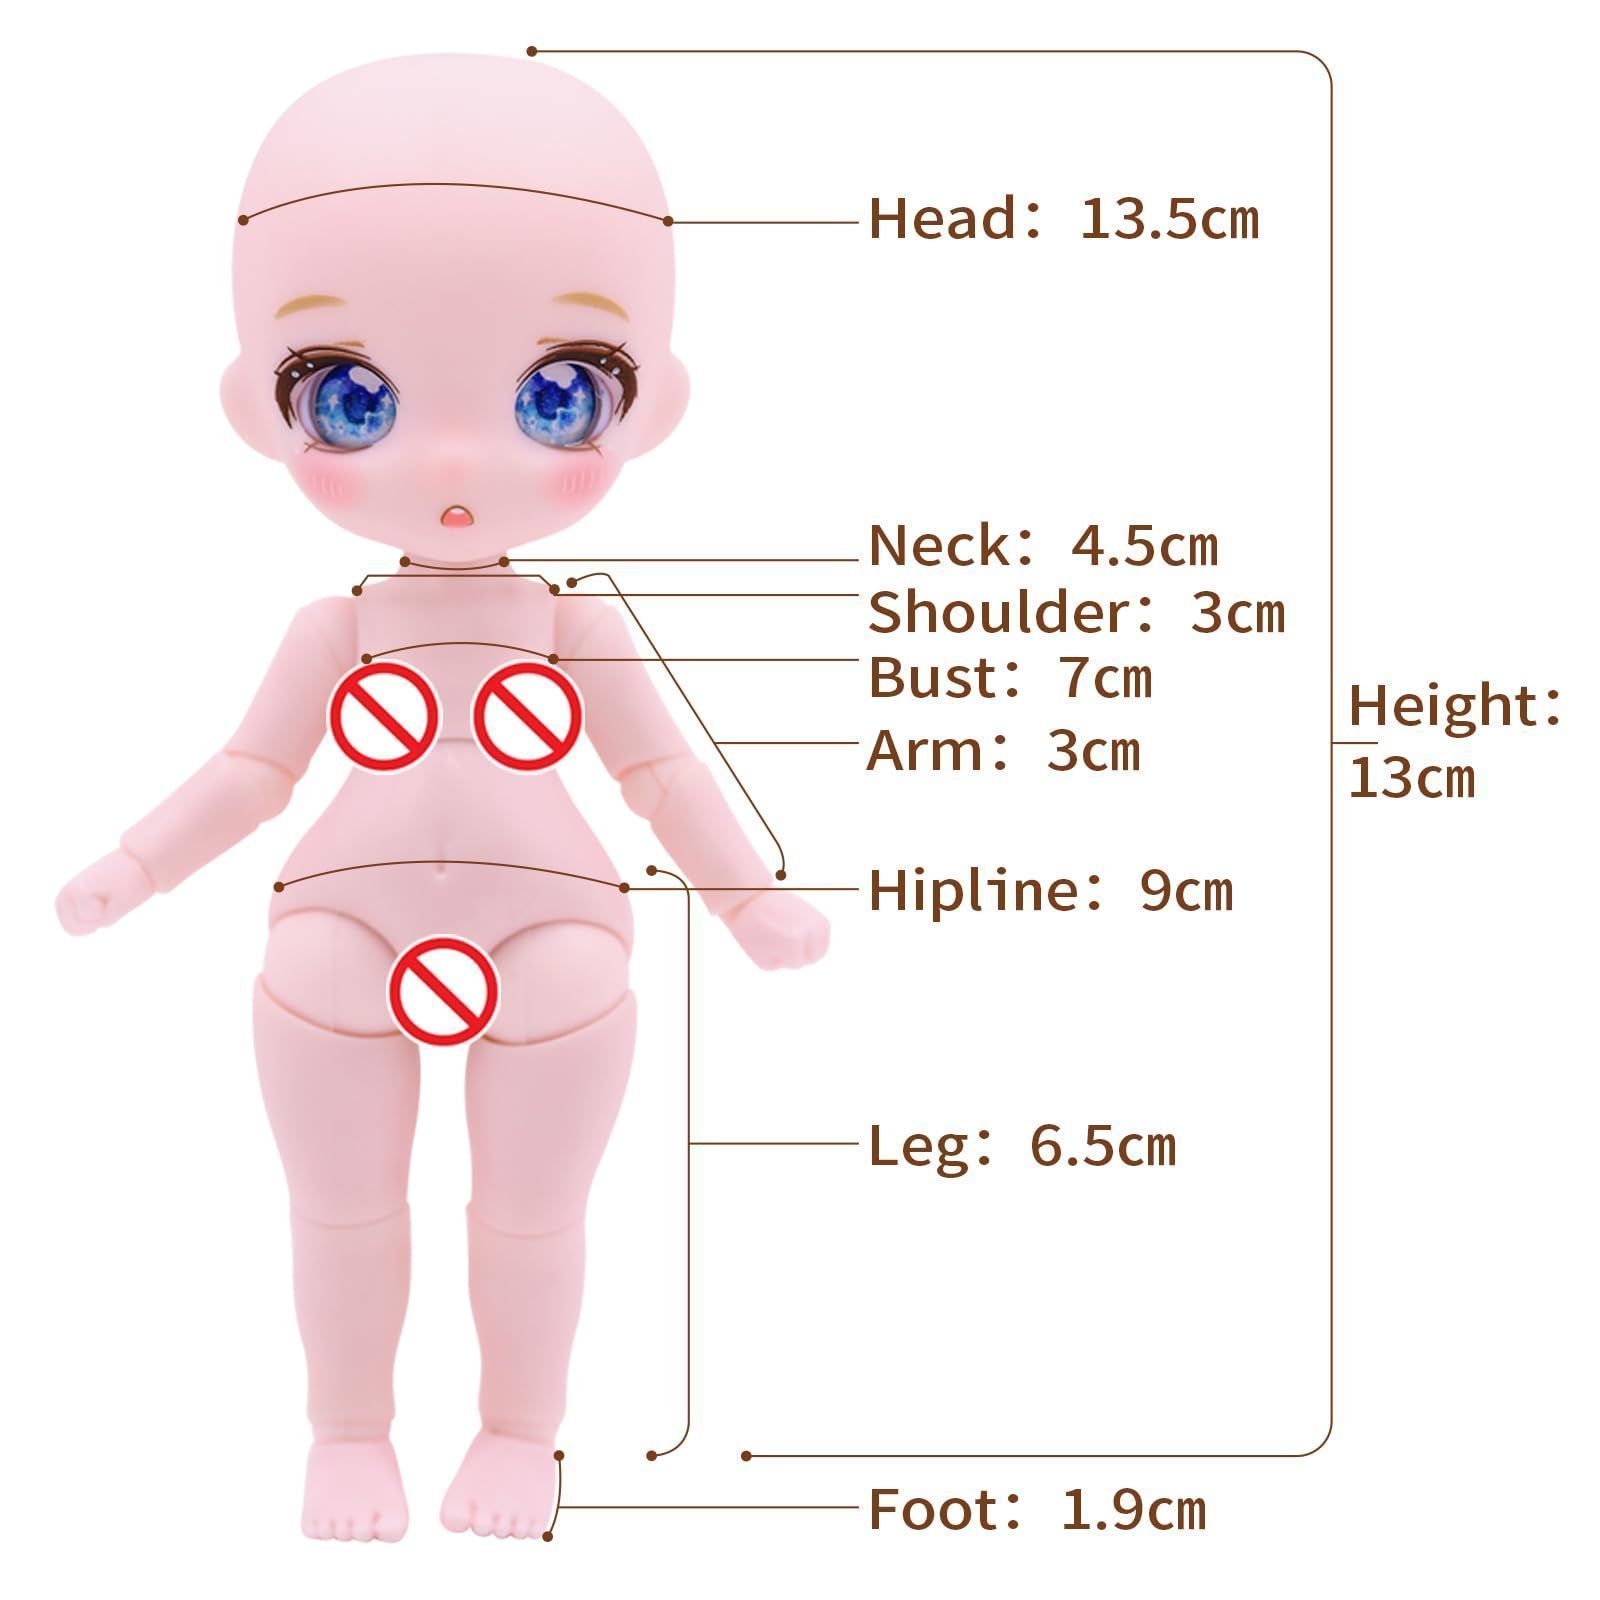 【人気商品】Days 13cm bjd Fortune 人形 - アニメスタイルの人形セット、ギフト、装飾、DIY ICY エクササイズ、コレクションに最適、女の子の人形 8+(Capricorn)